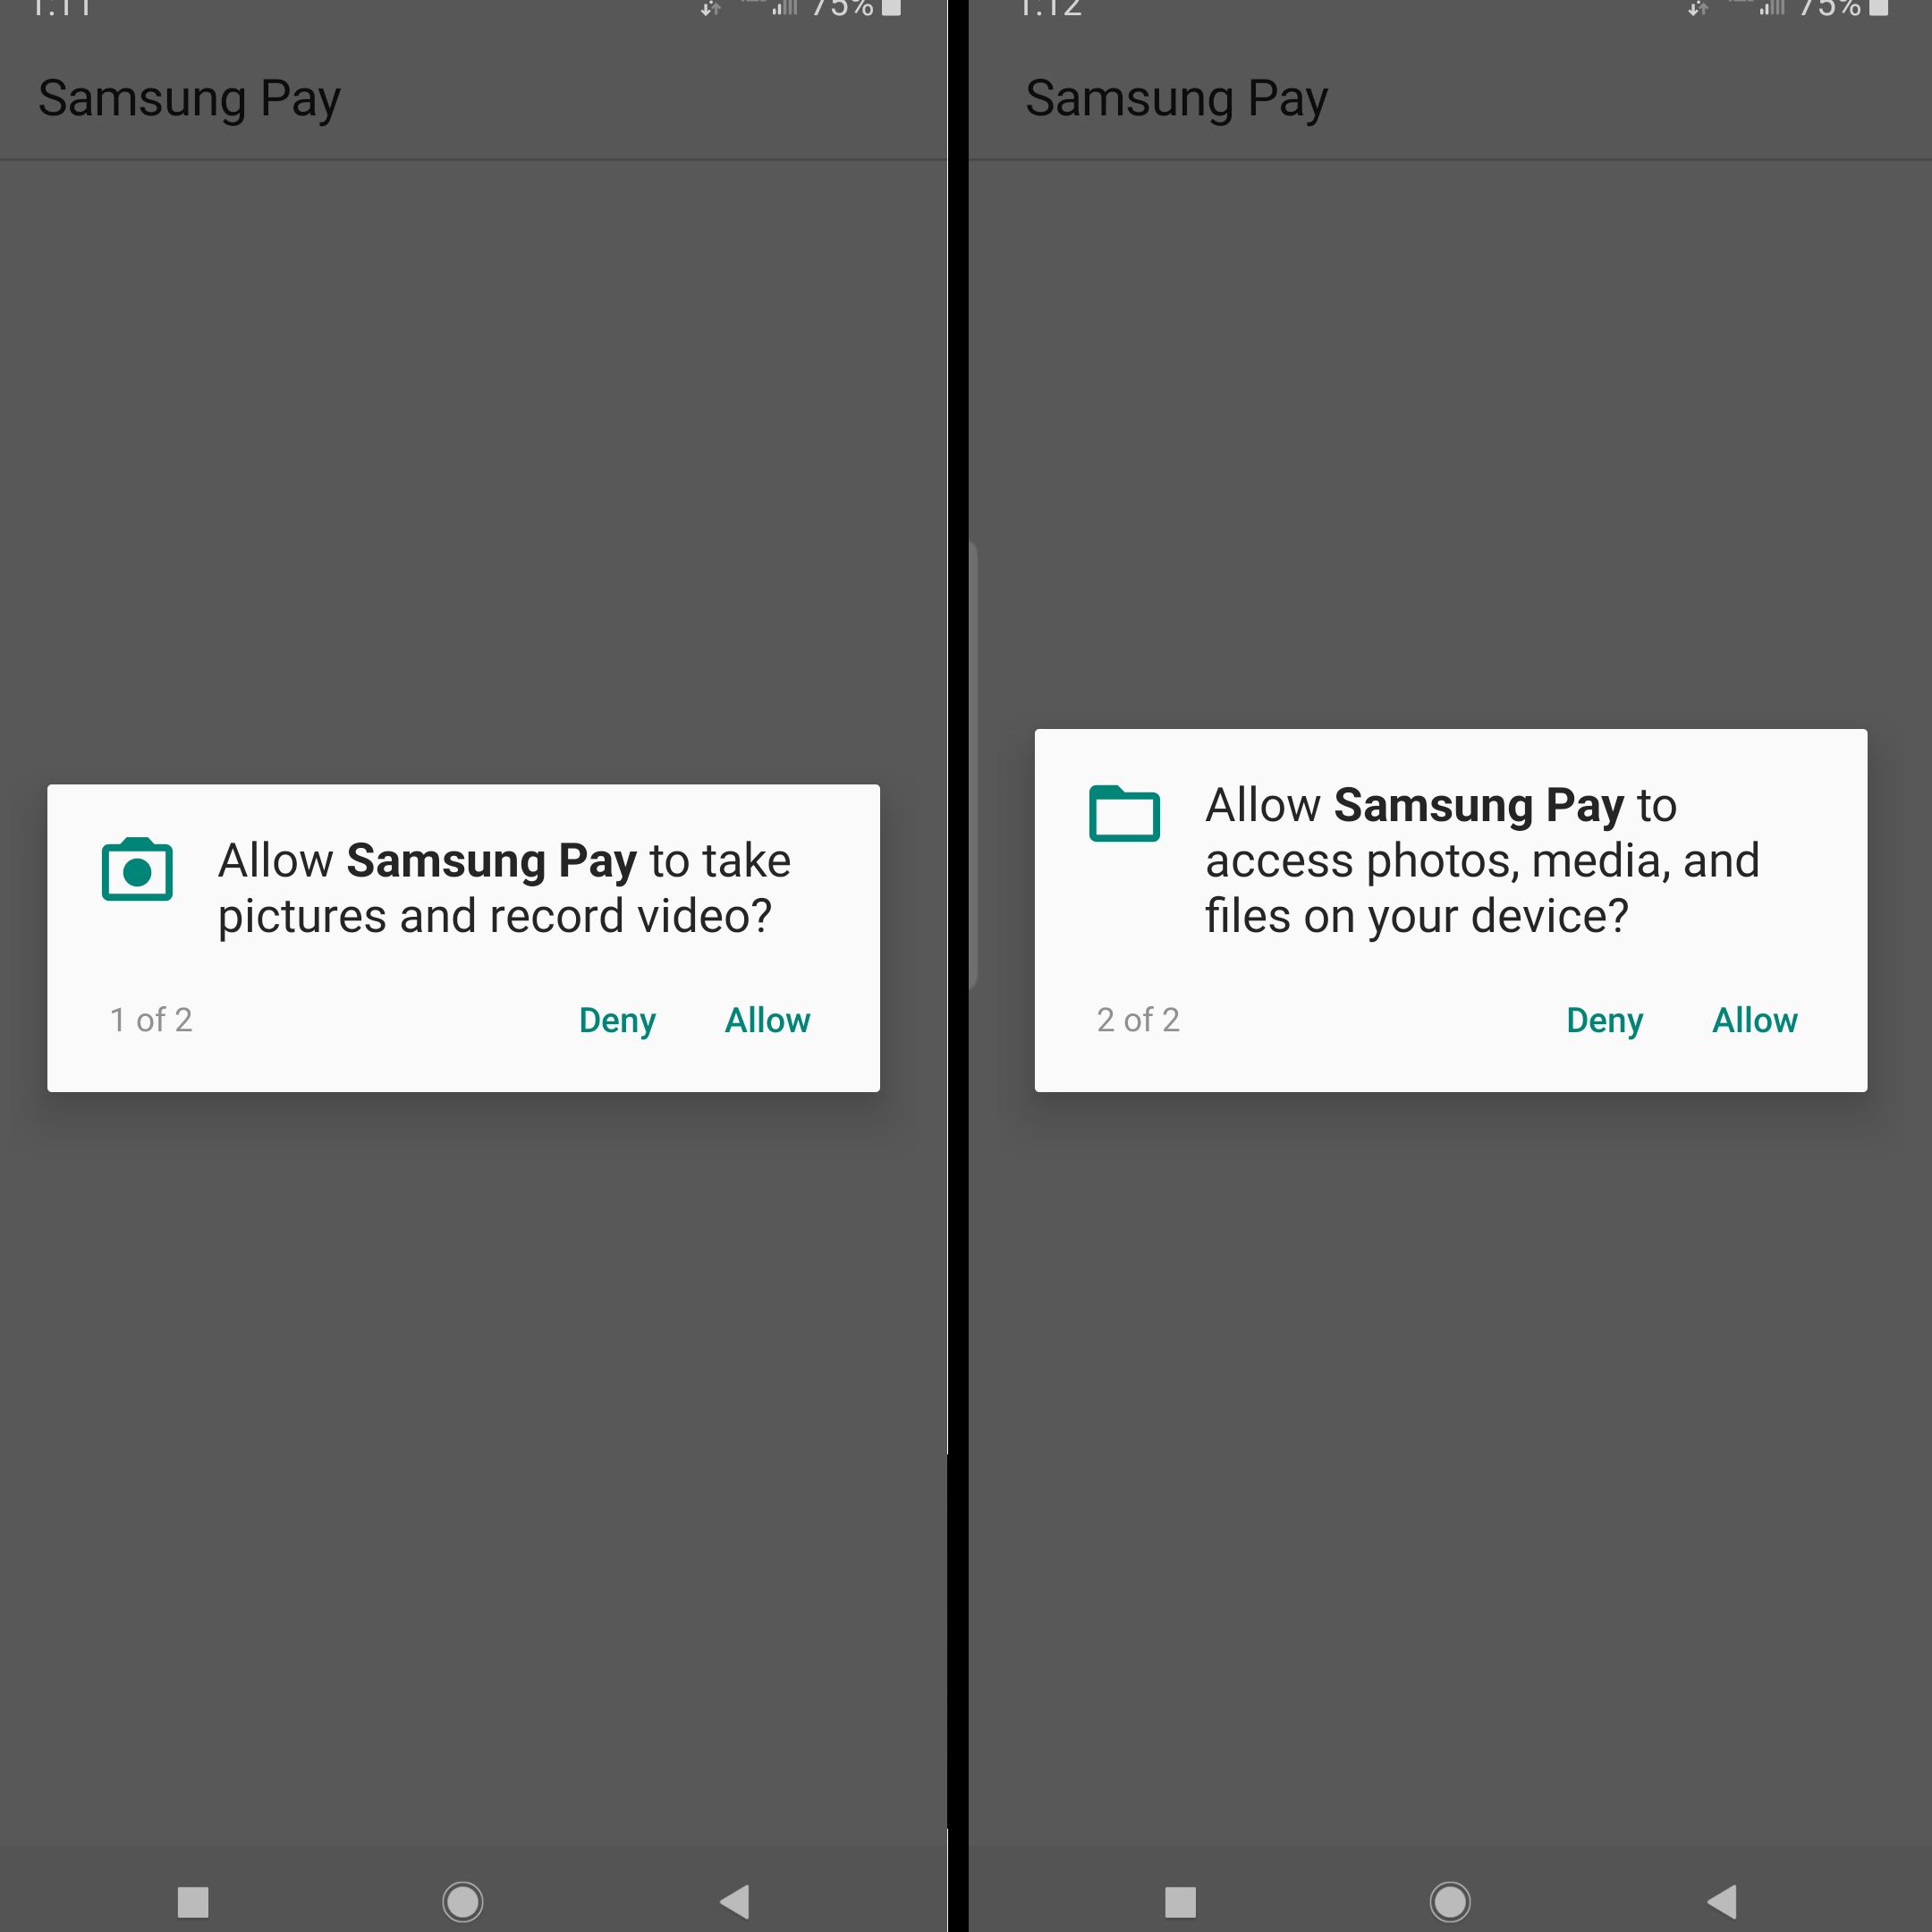 žádost o povolení fotografií a souborů od společnosti Samsung pay